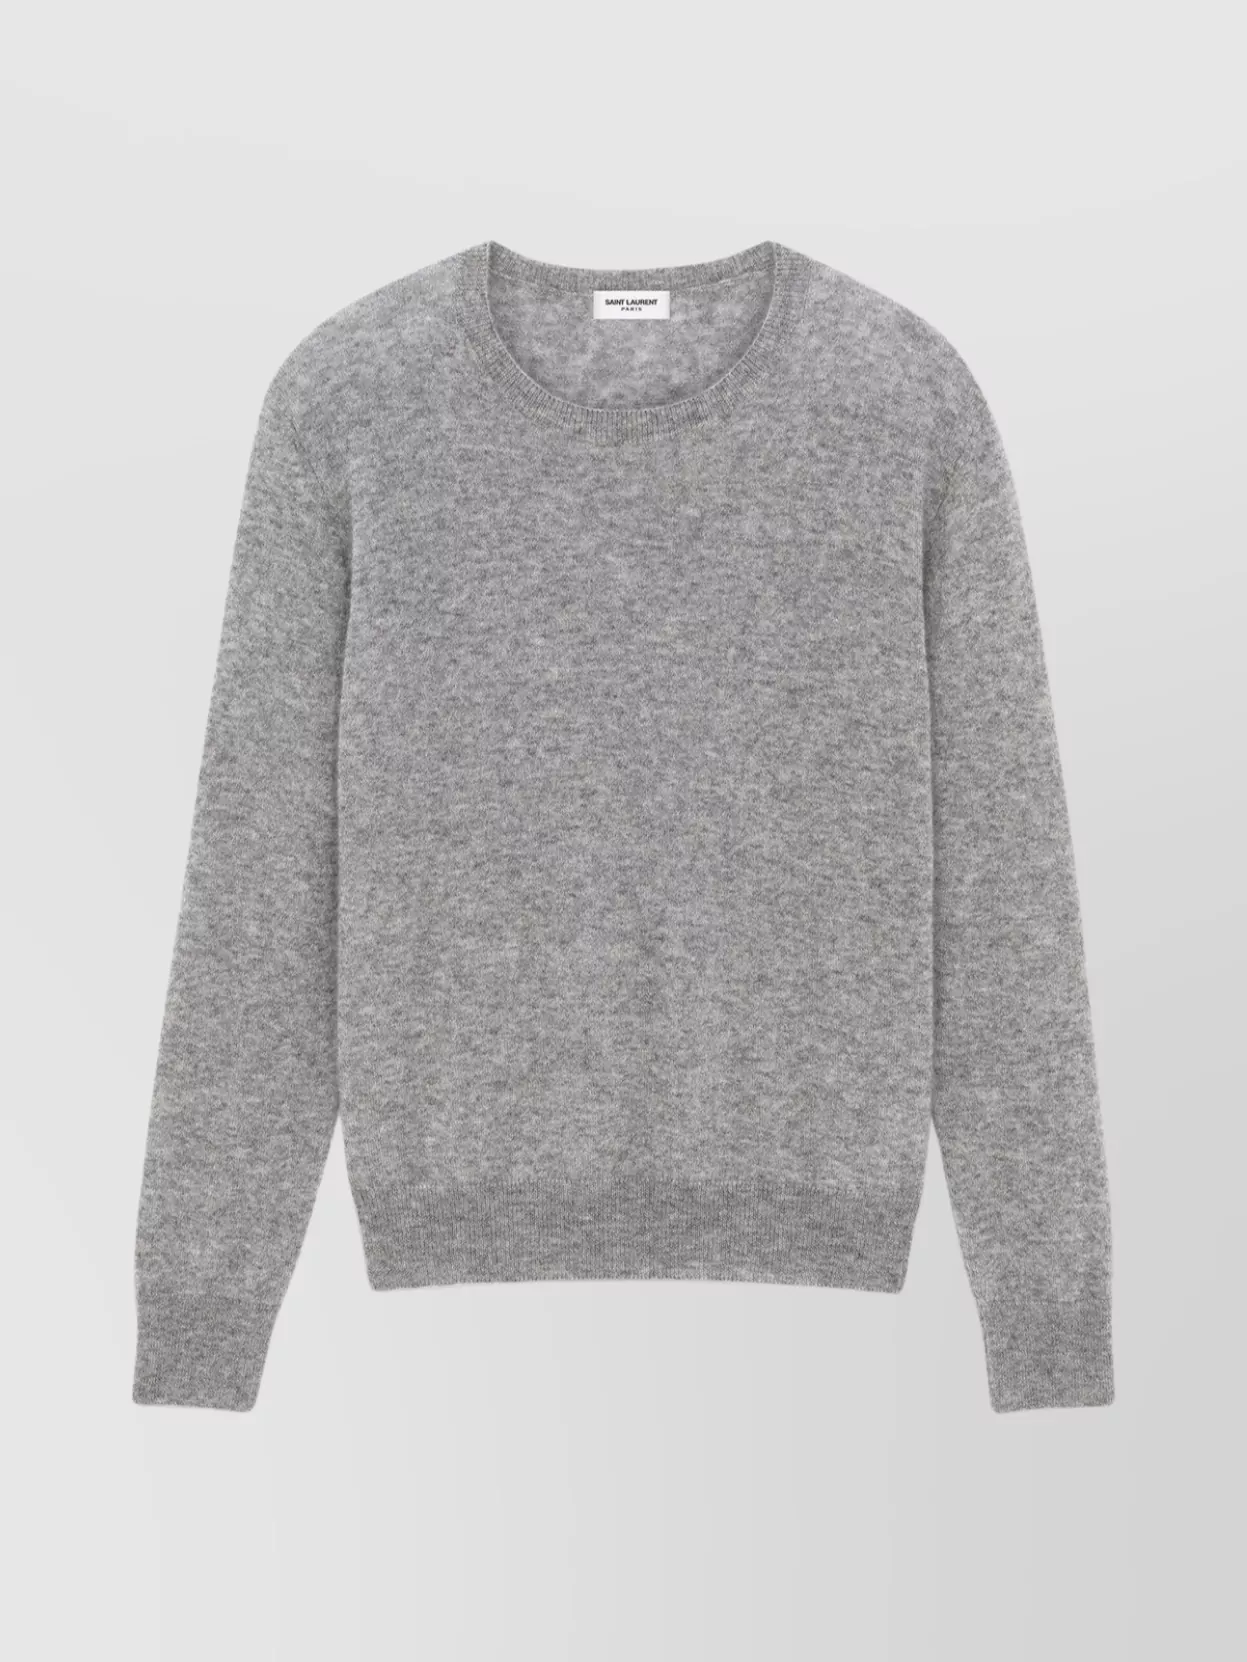 Shop Saint Laurent Versatile Ribbed Knit Crewneck Sweater